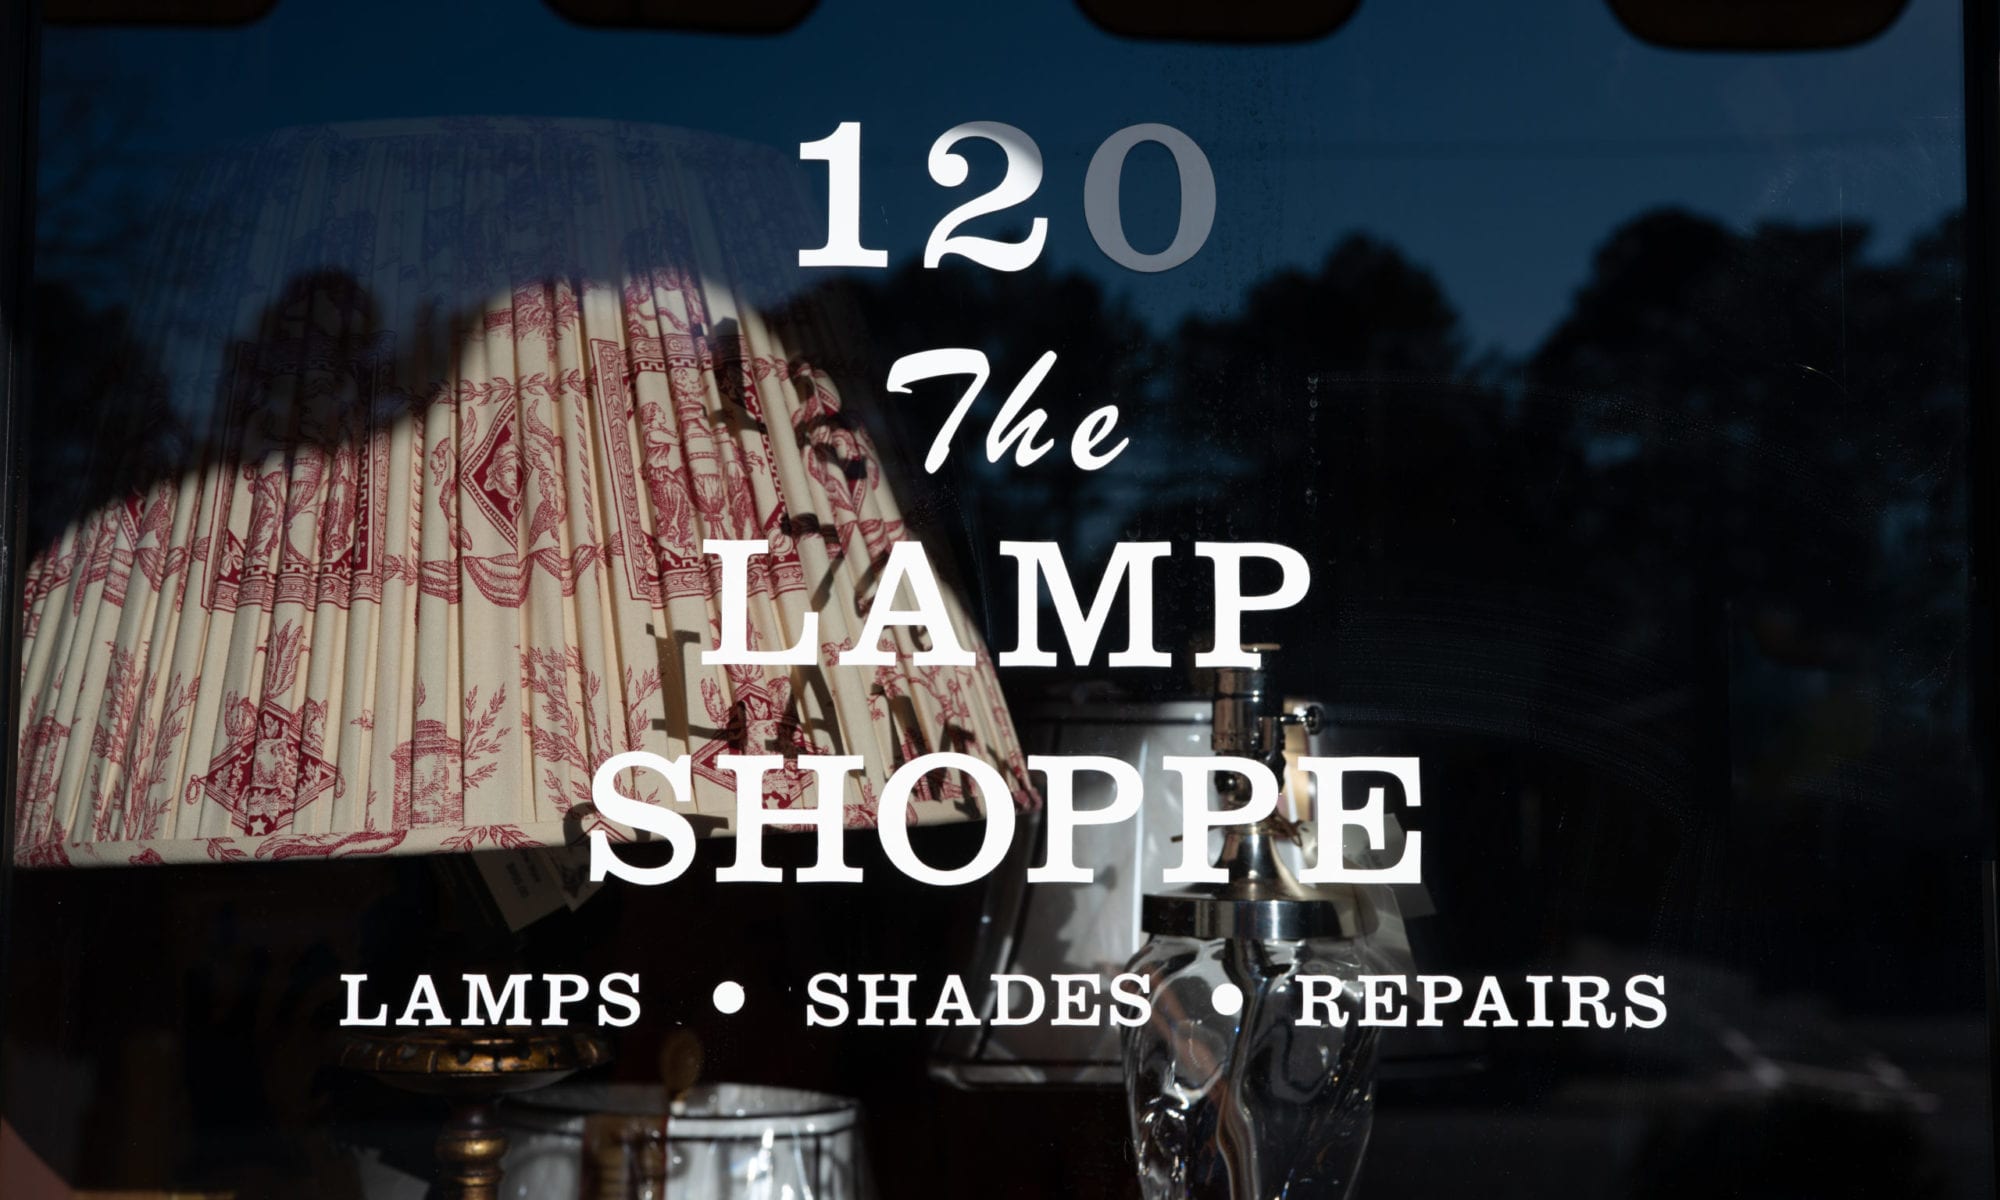 The Lamp Pe Atlanta Antiques, Lamp Repair Miami Circle